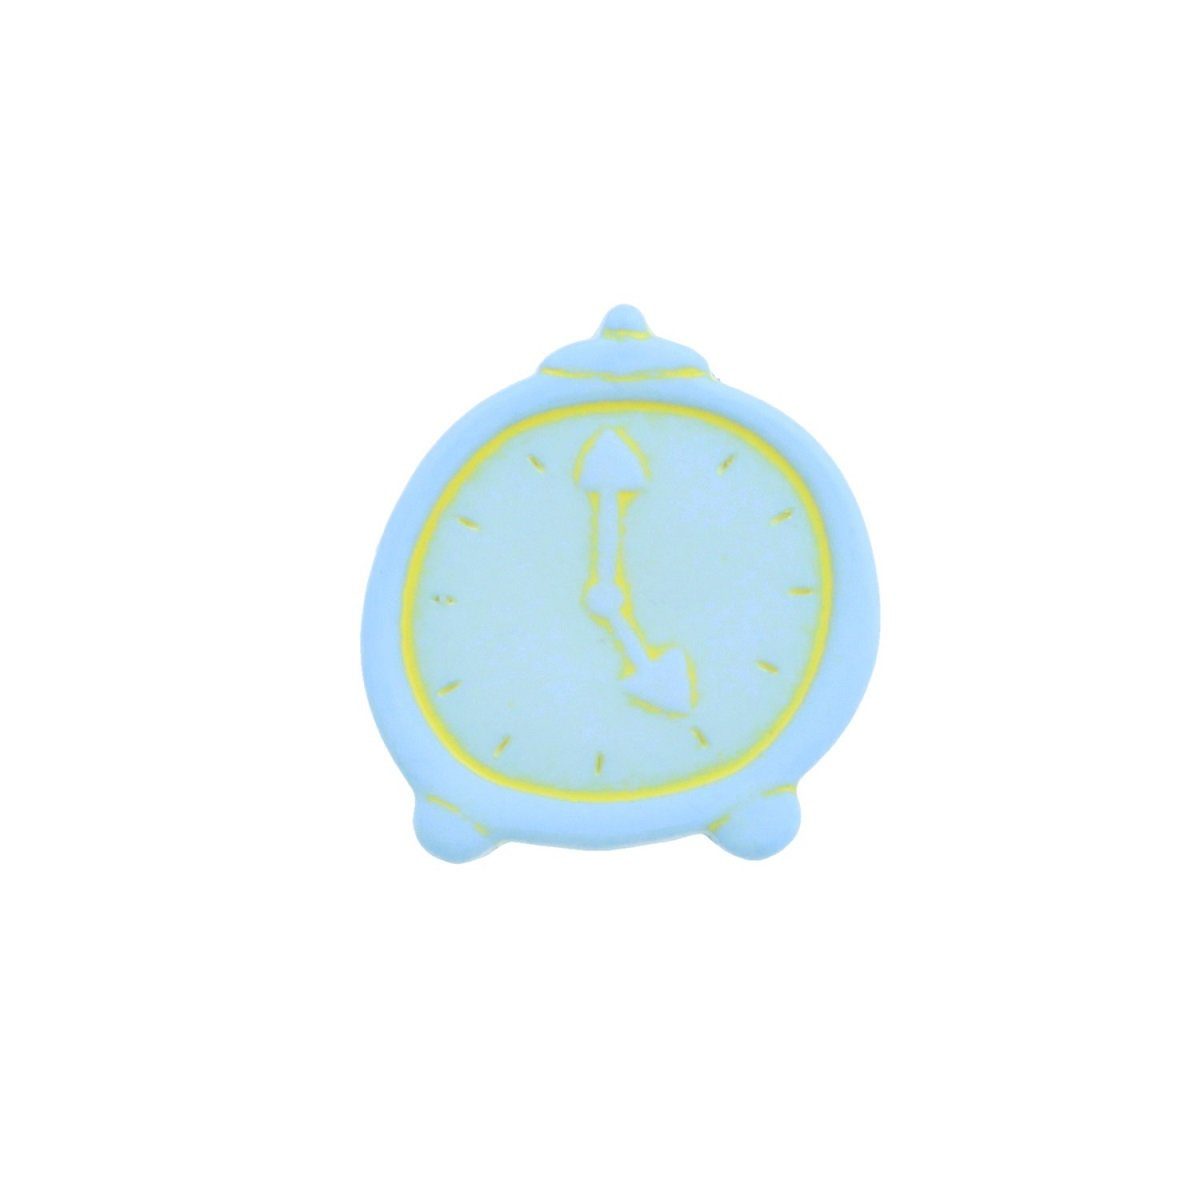 MS Beschläge Türbeschlag Möbelknopf Kinderzimmerknopf Modell Blaue Uhr